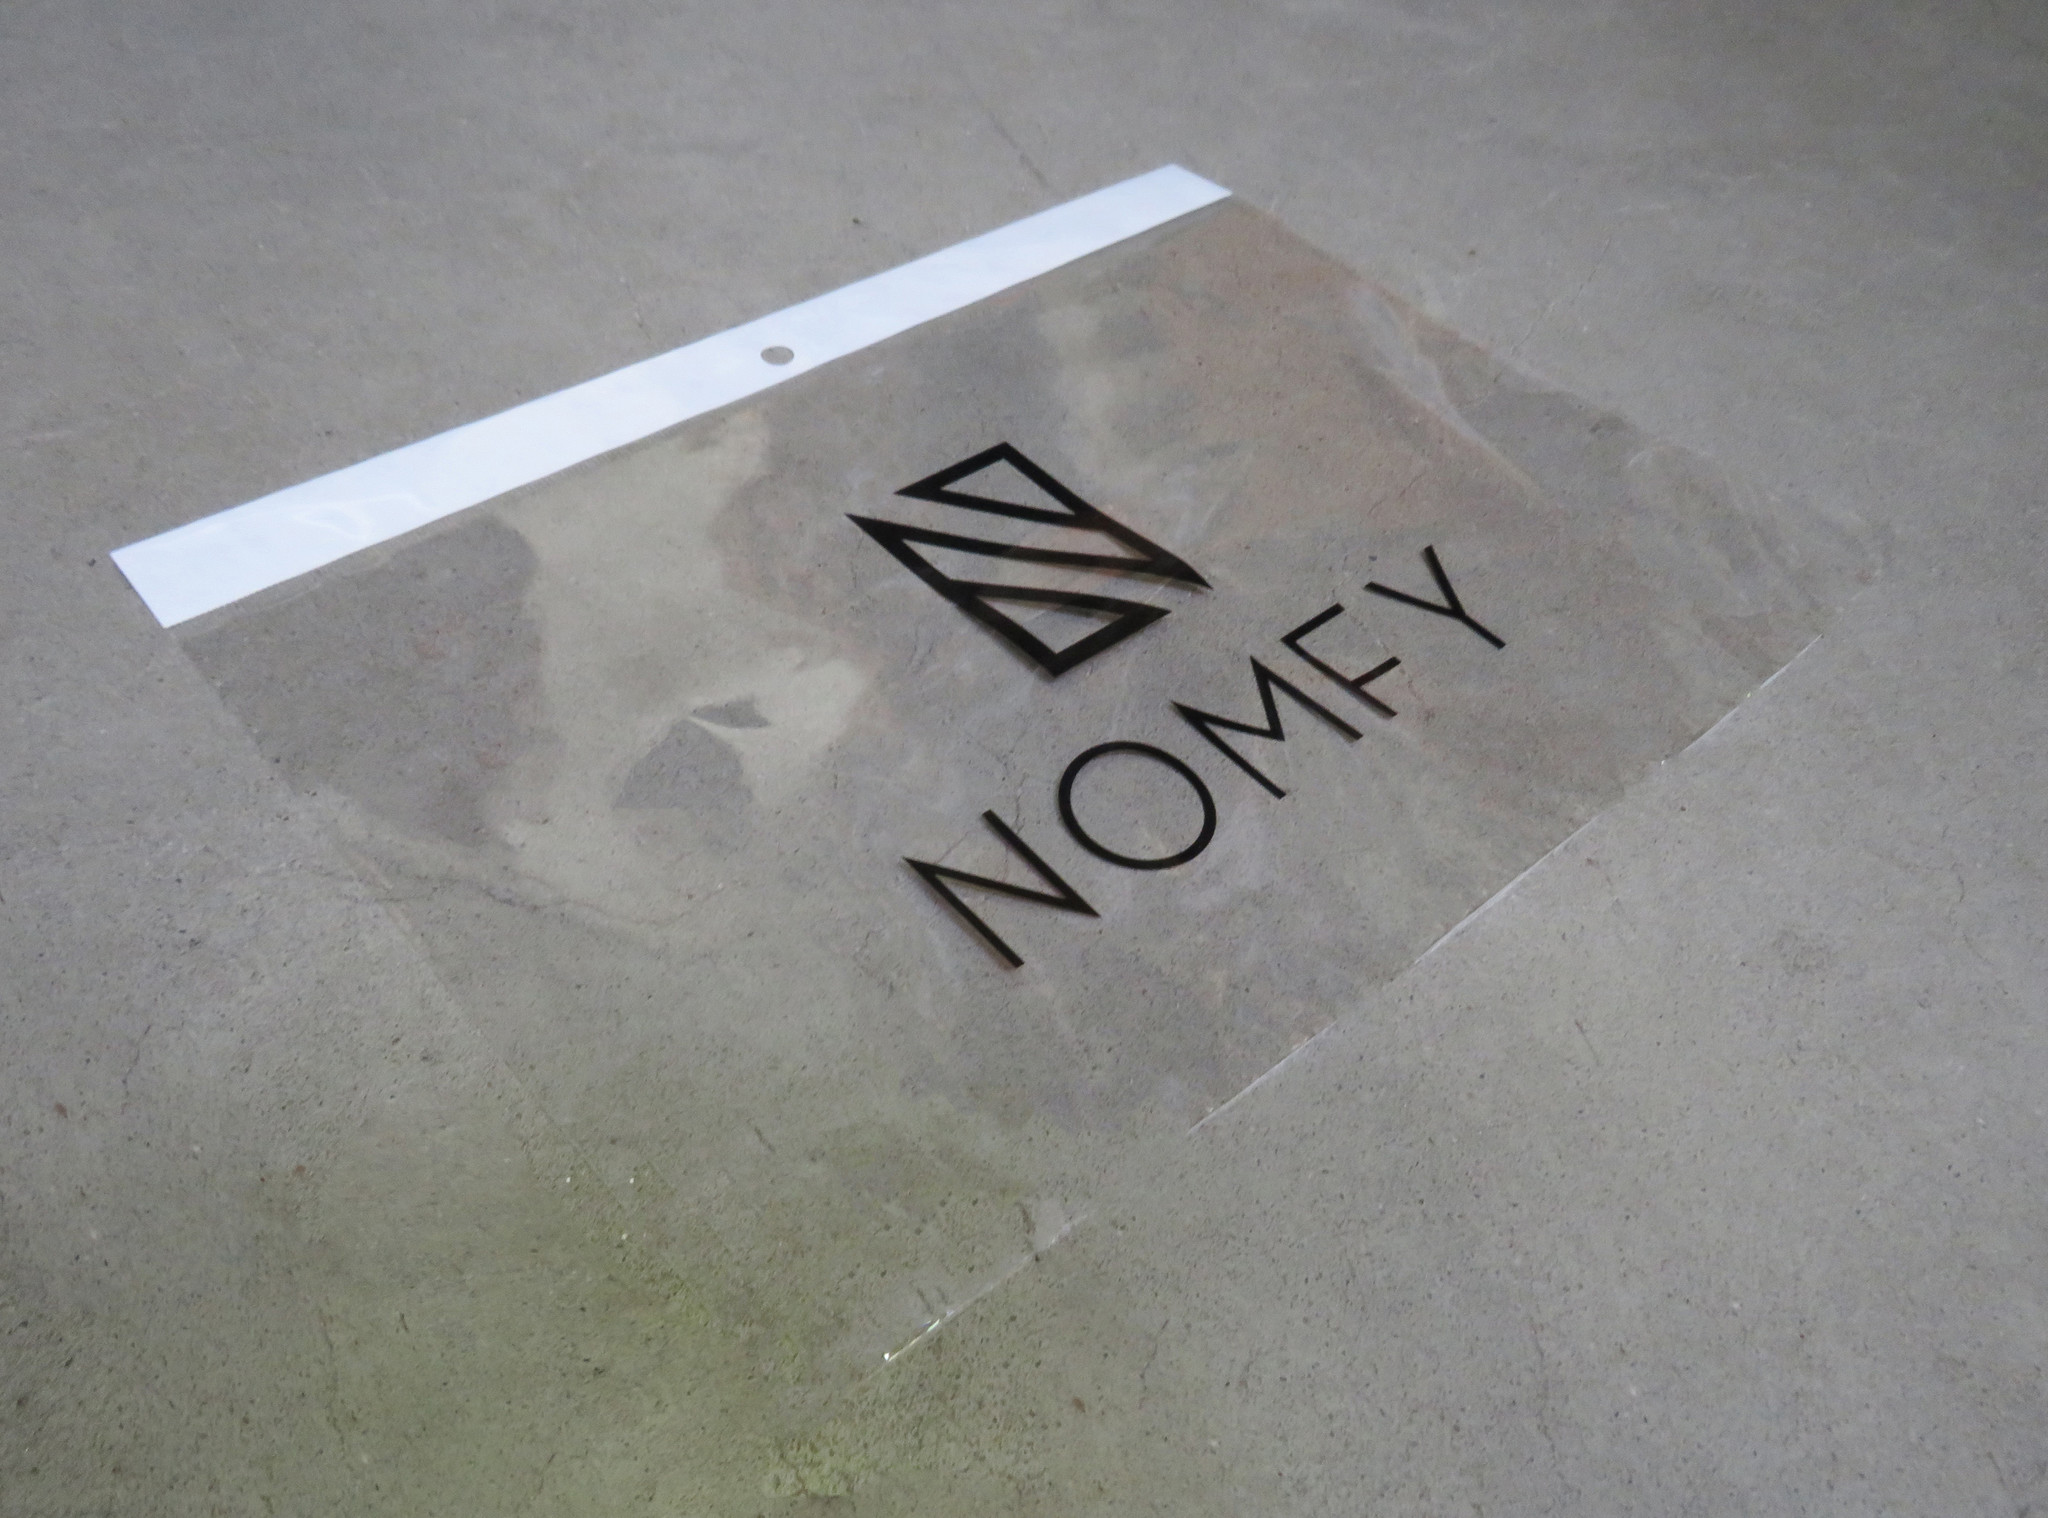 Nomfy Nomfy iPad Pro 11 inch (2021) Screenprotector - 3 PACK